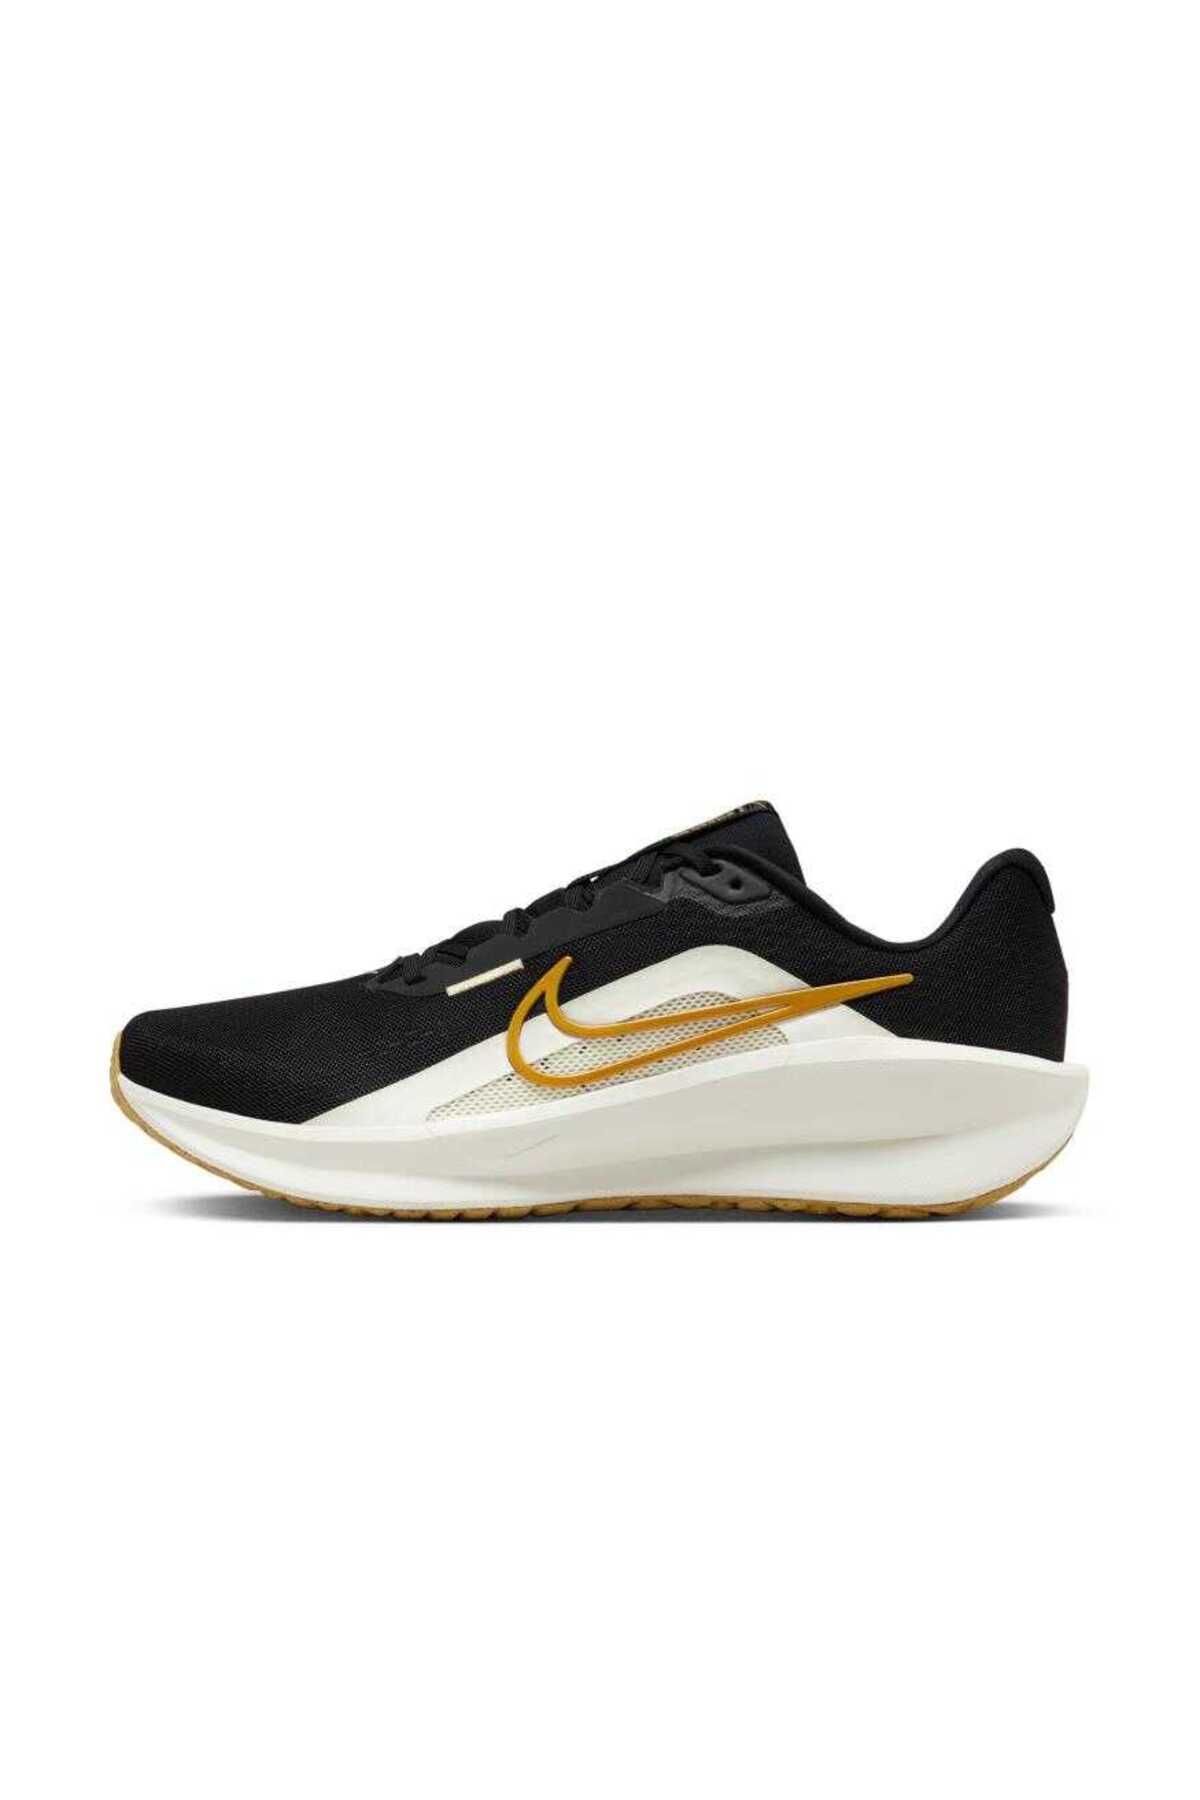 Nike Downshifter 13 Erkek Koşu Ayakkabısı FD6454-006